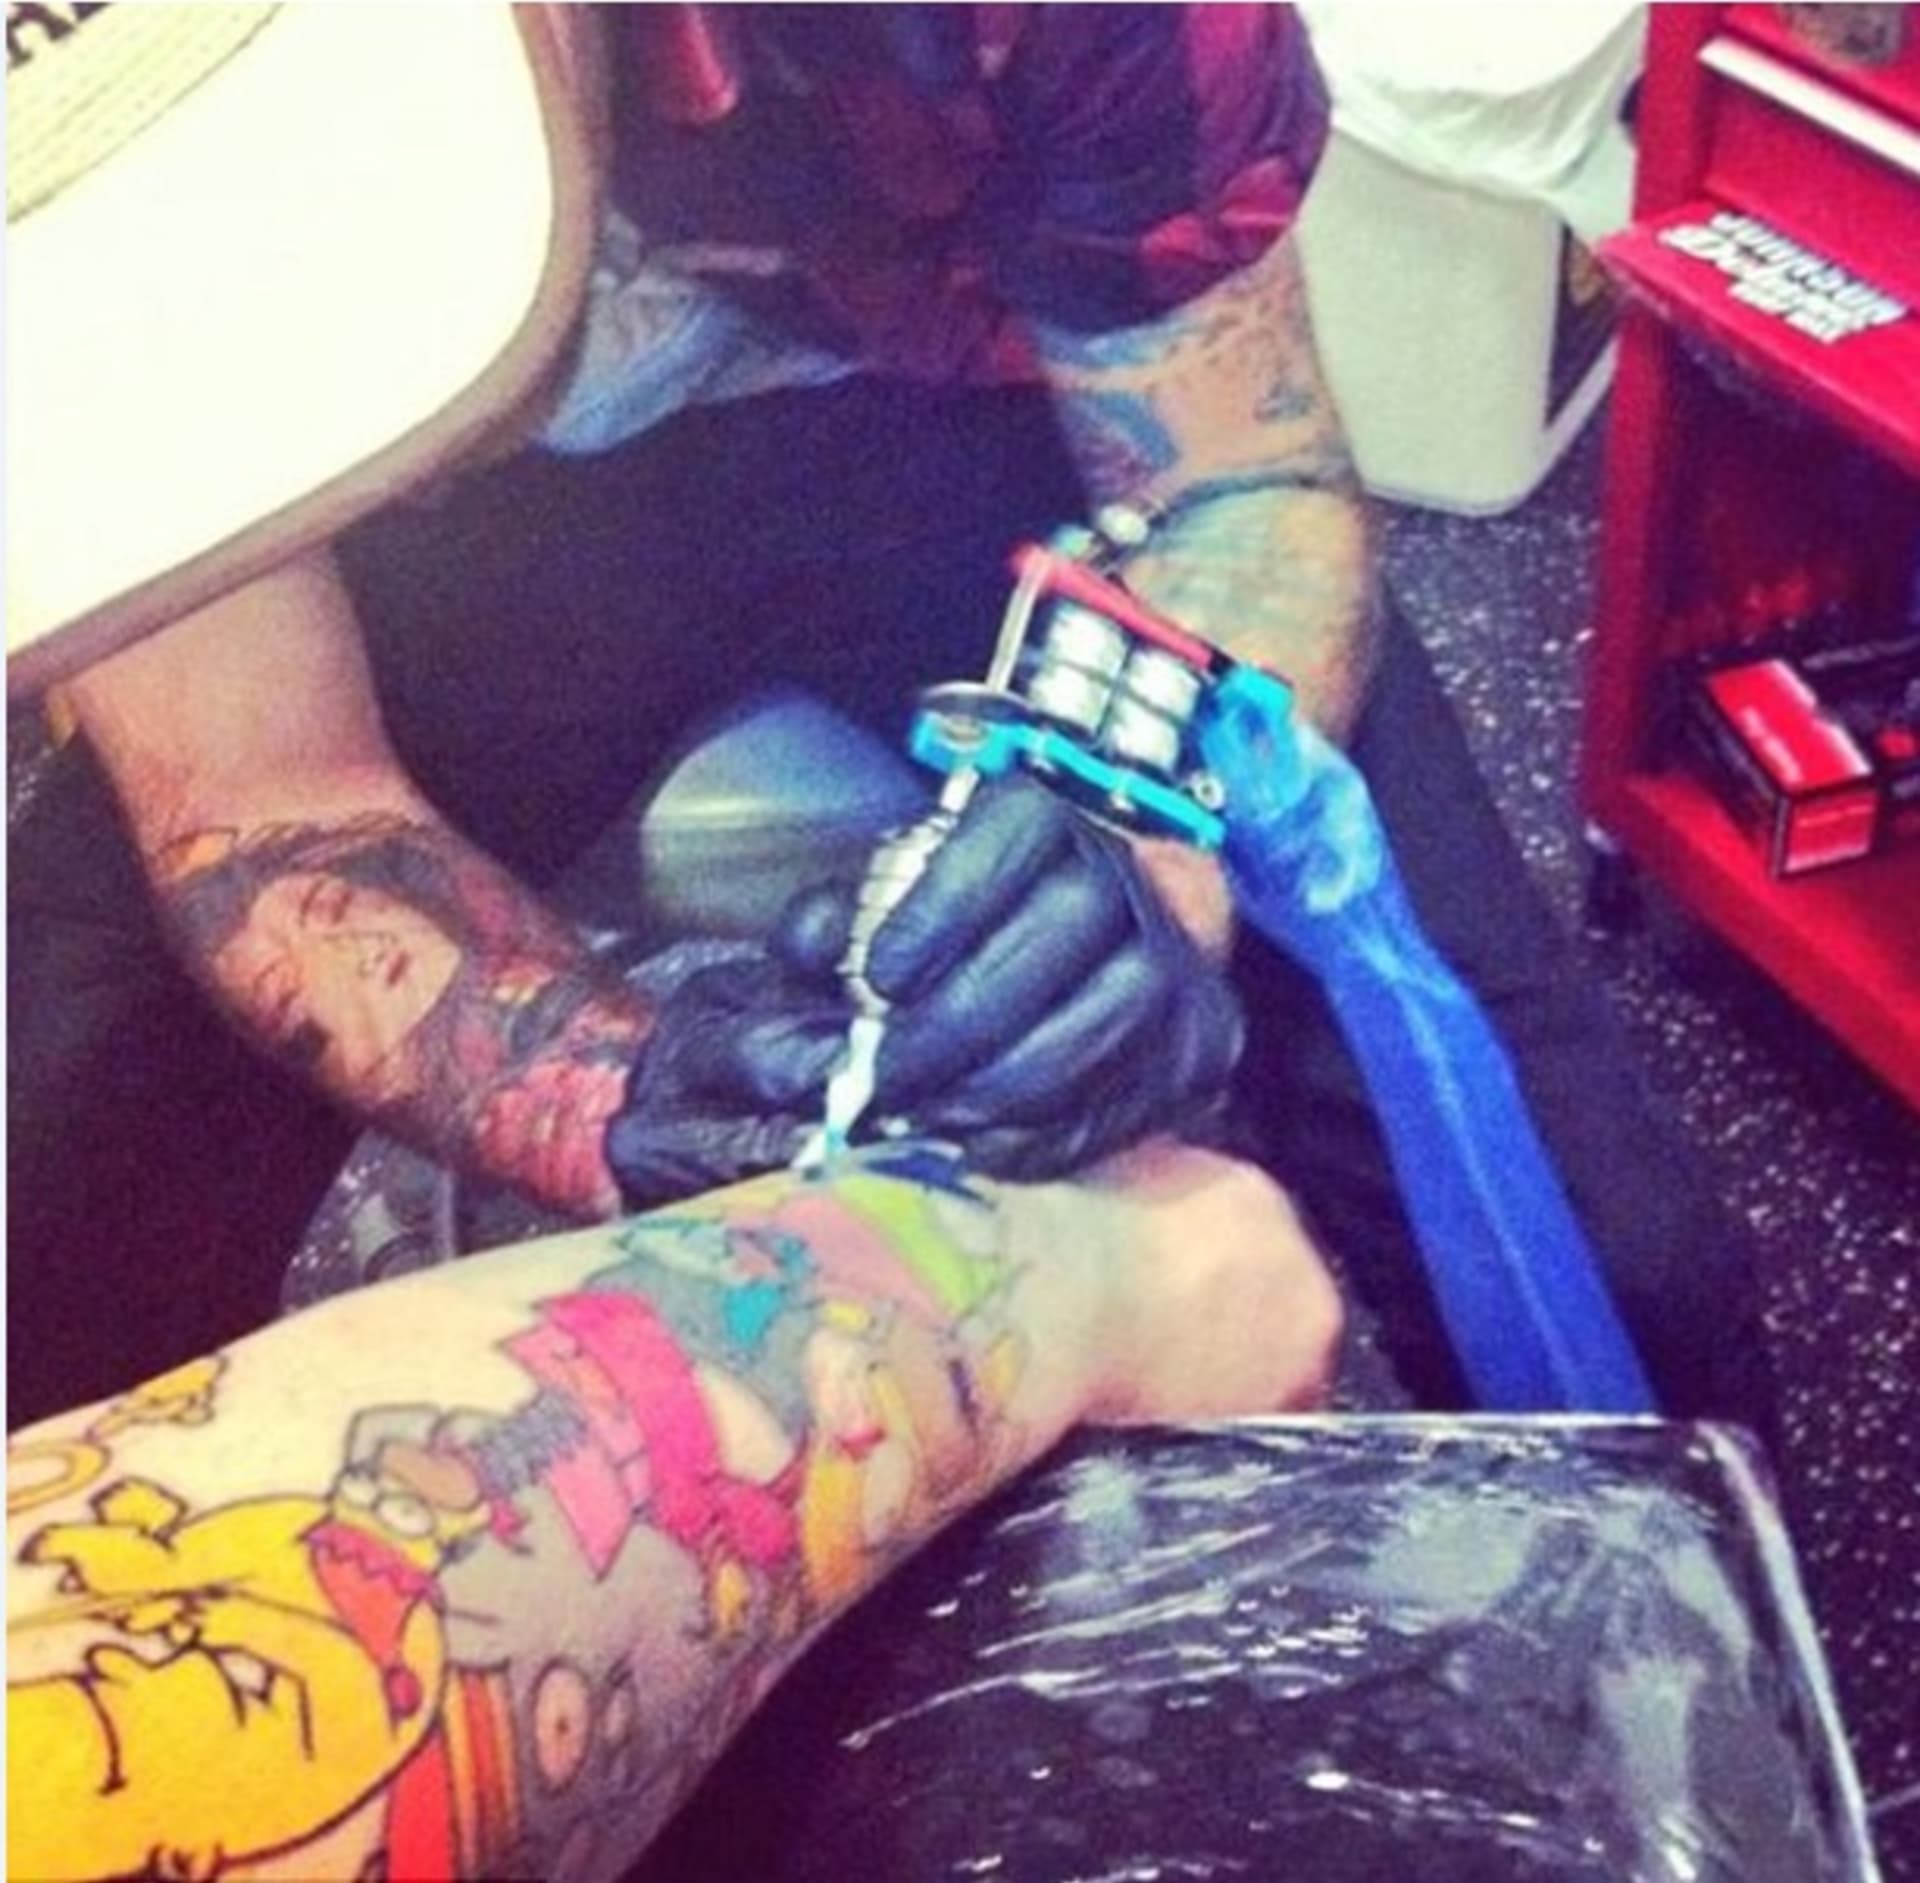 Celkově strávil Lee 25 hodin v tetovacím salonu, než vzniklo celé tetování.